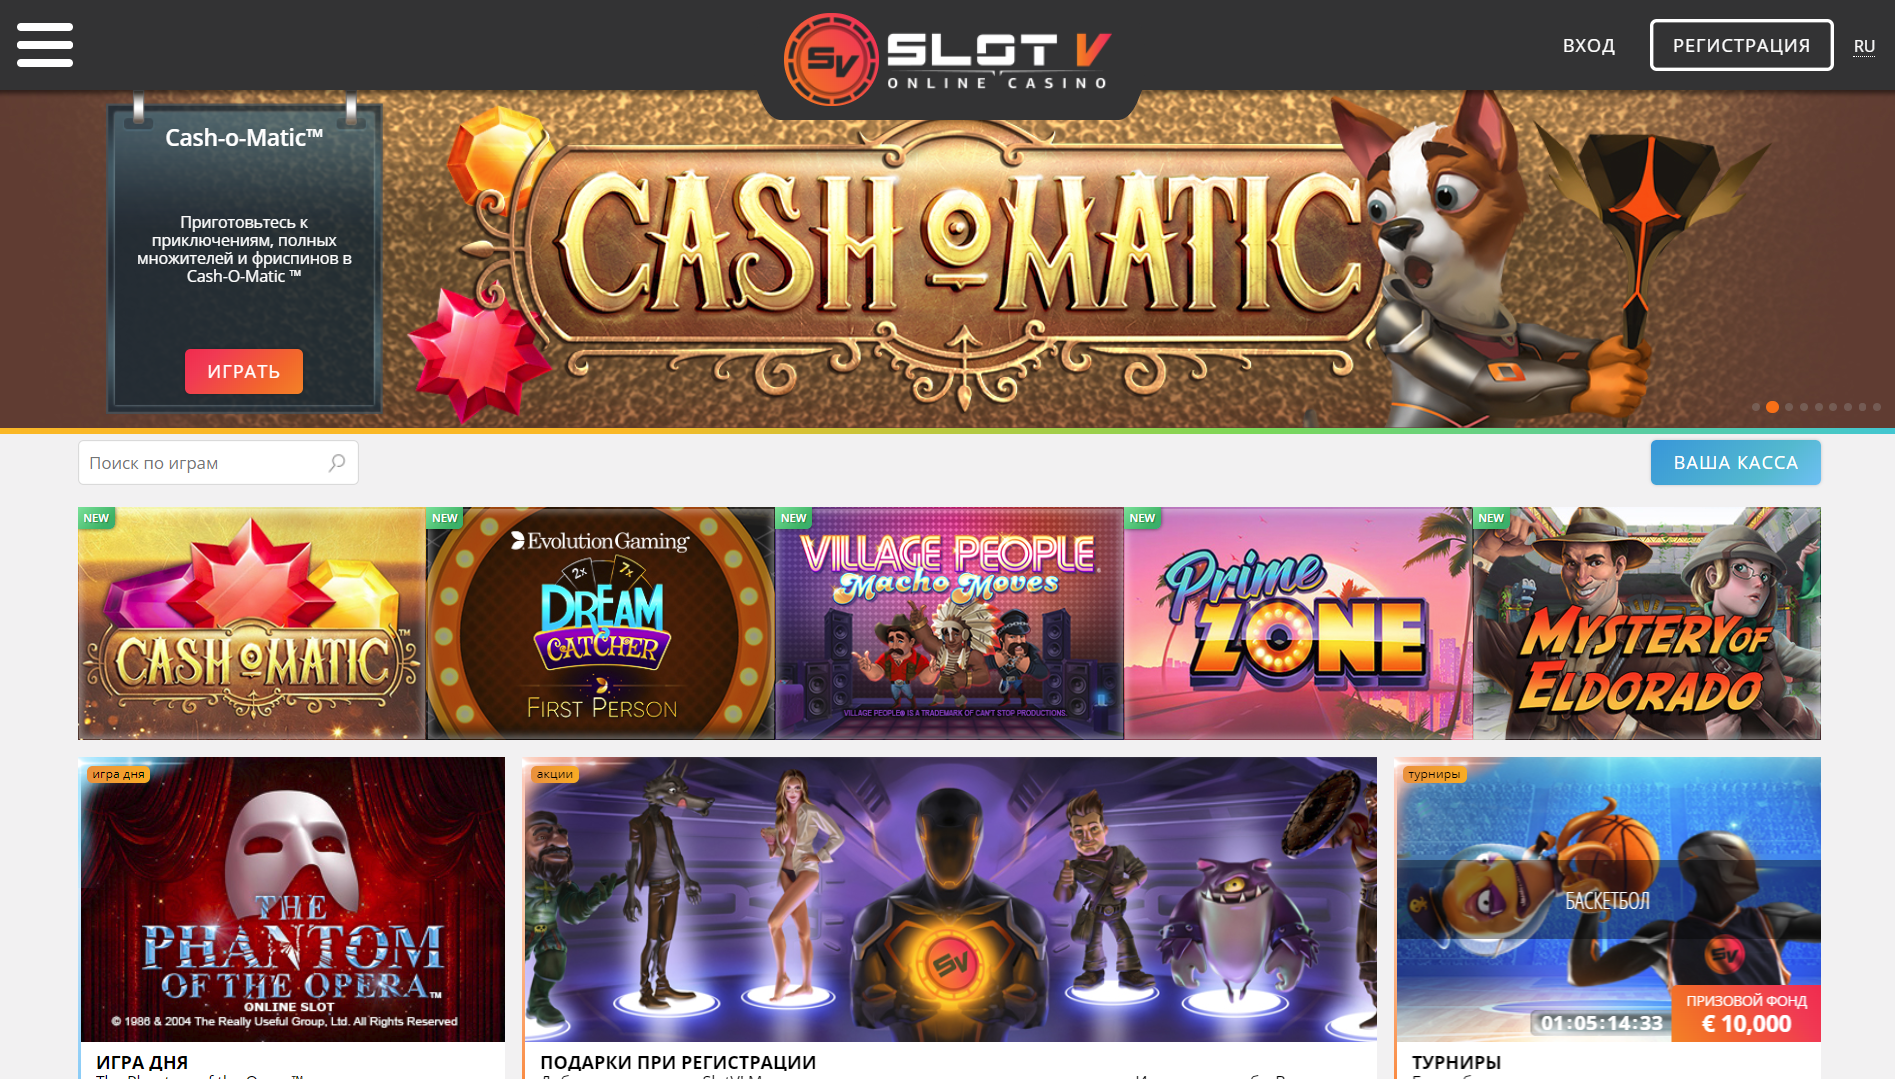 slot v online casino slotvcasino11a store